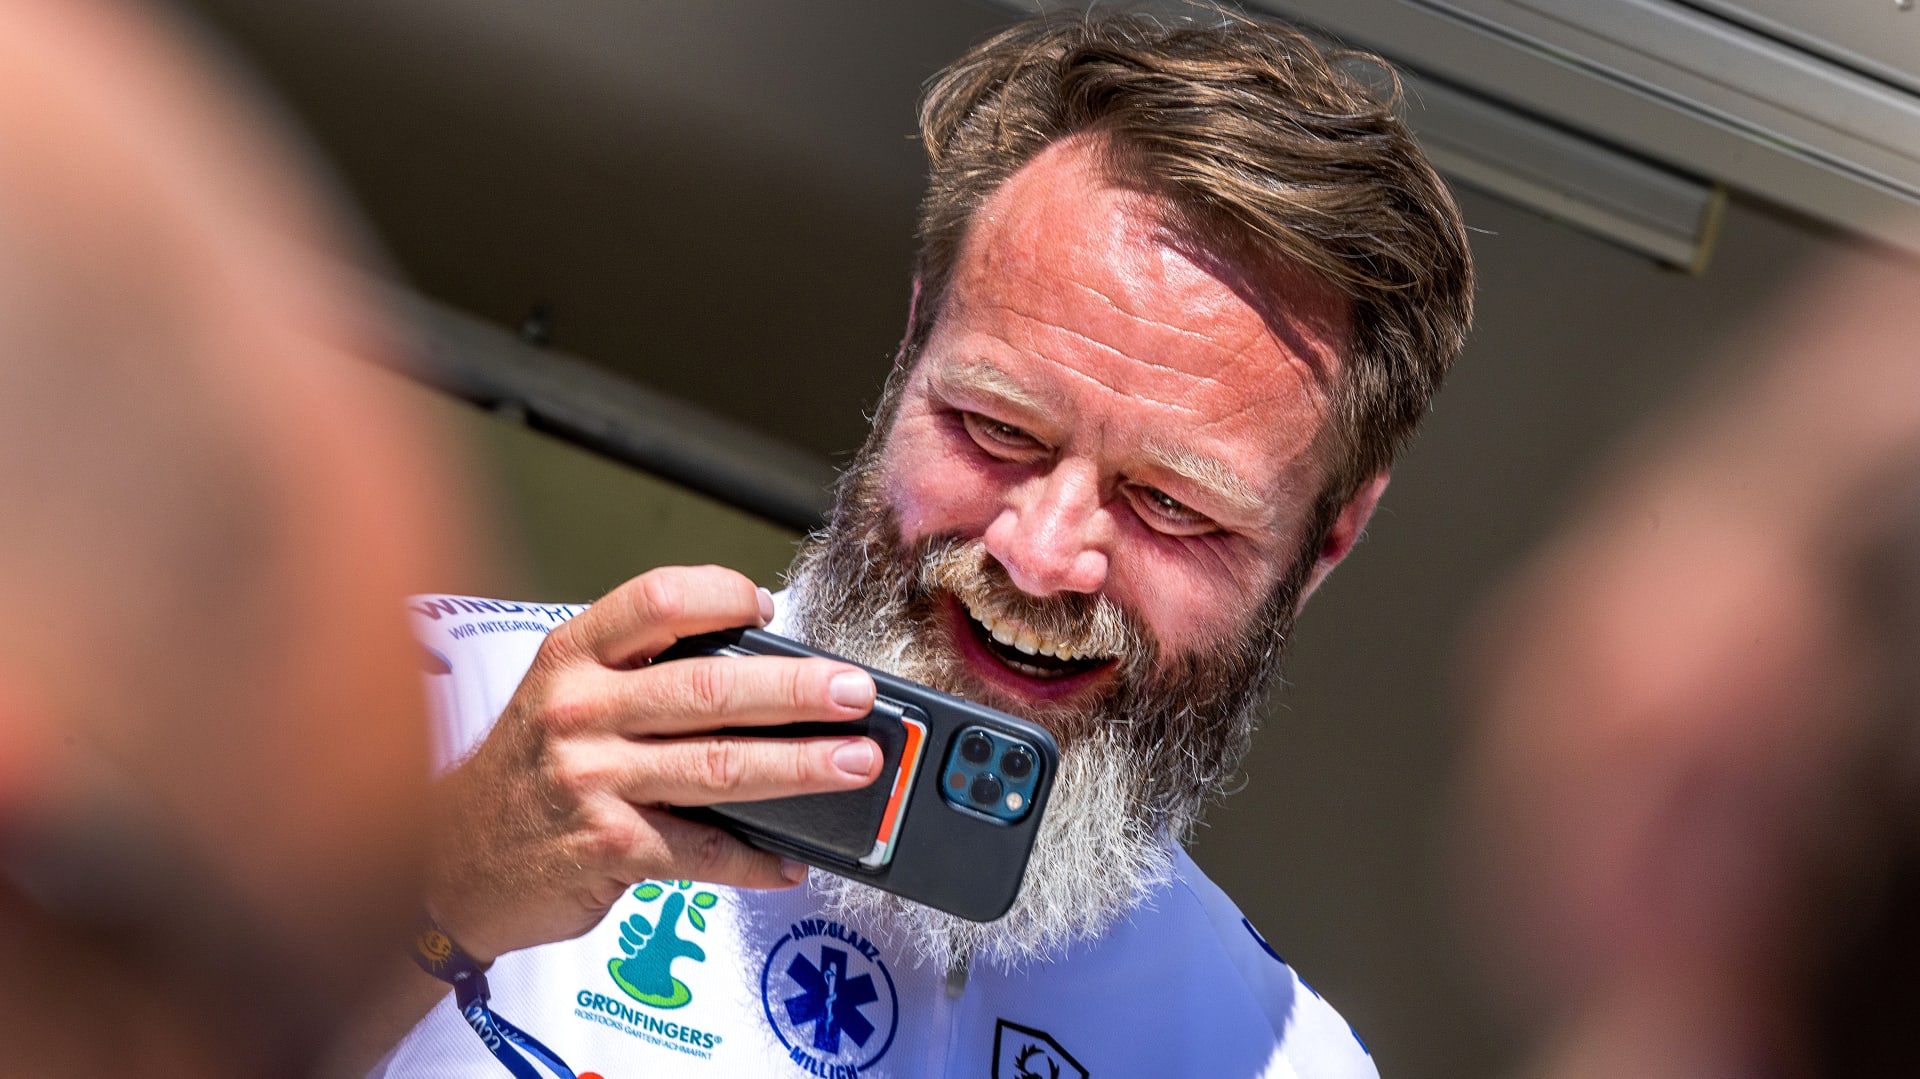 Rodák z dánské Kodaně Claus Ruhe Madsen, který je starostou severoněmeckého města Rostock, natáčí na mobilní telefon účastníky charitativního cyklistického výjezdu na pomoc chronicky nemocným dětem.